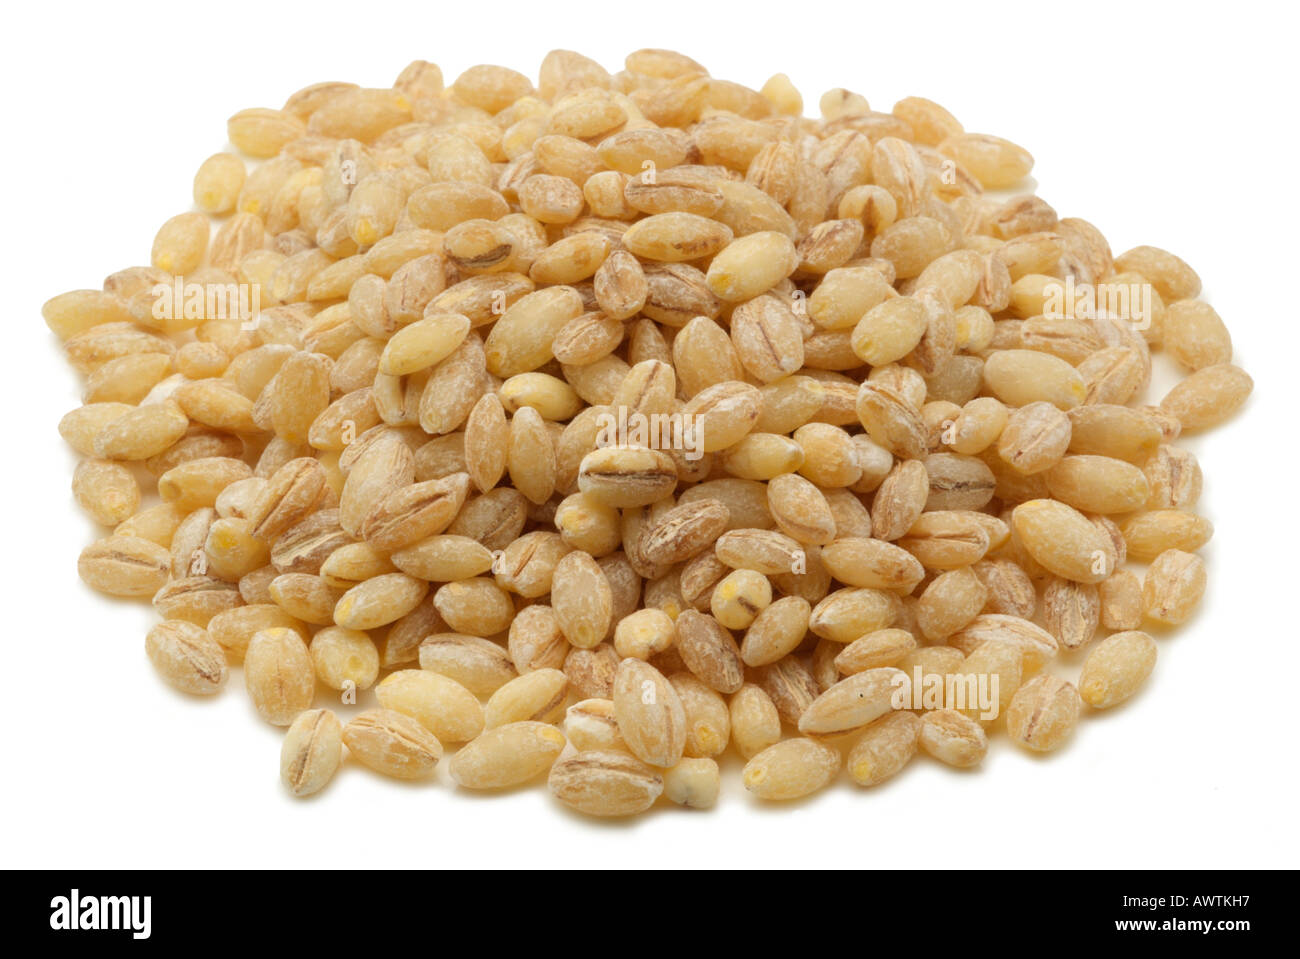 Pearl barley hordeum vulgare grain husk removed pulse brown tan Stock ...